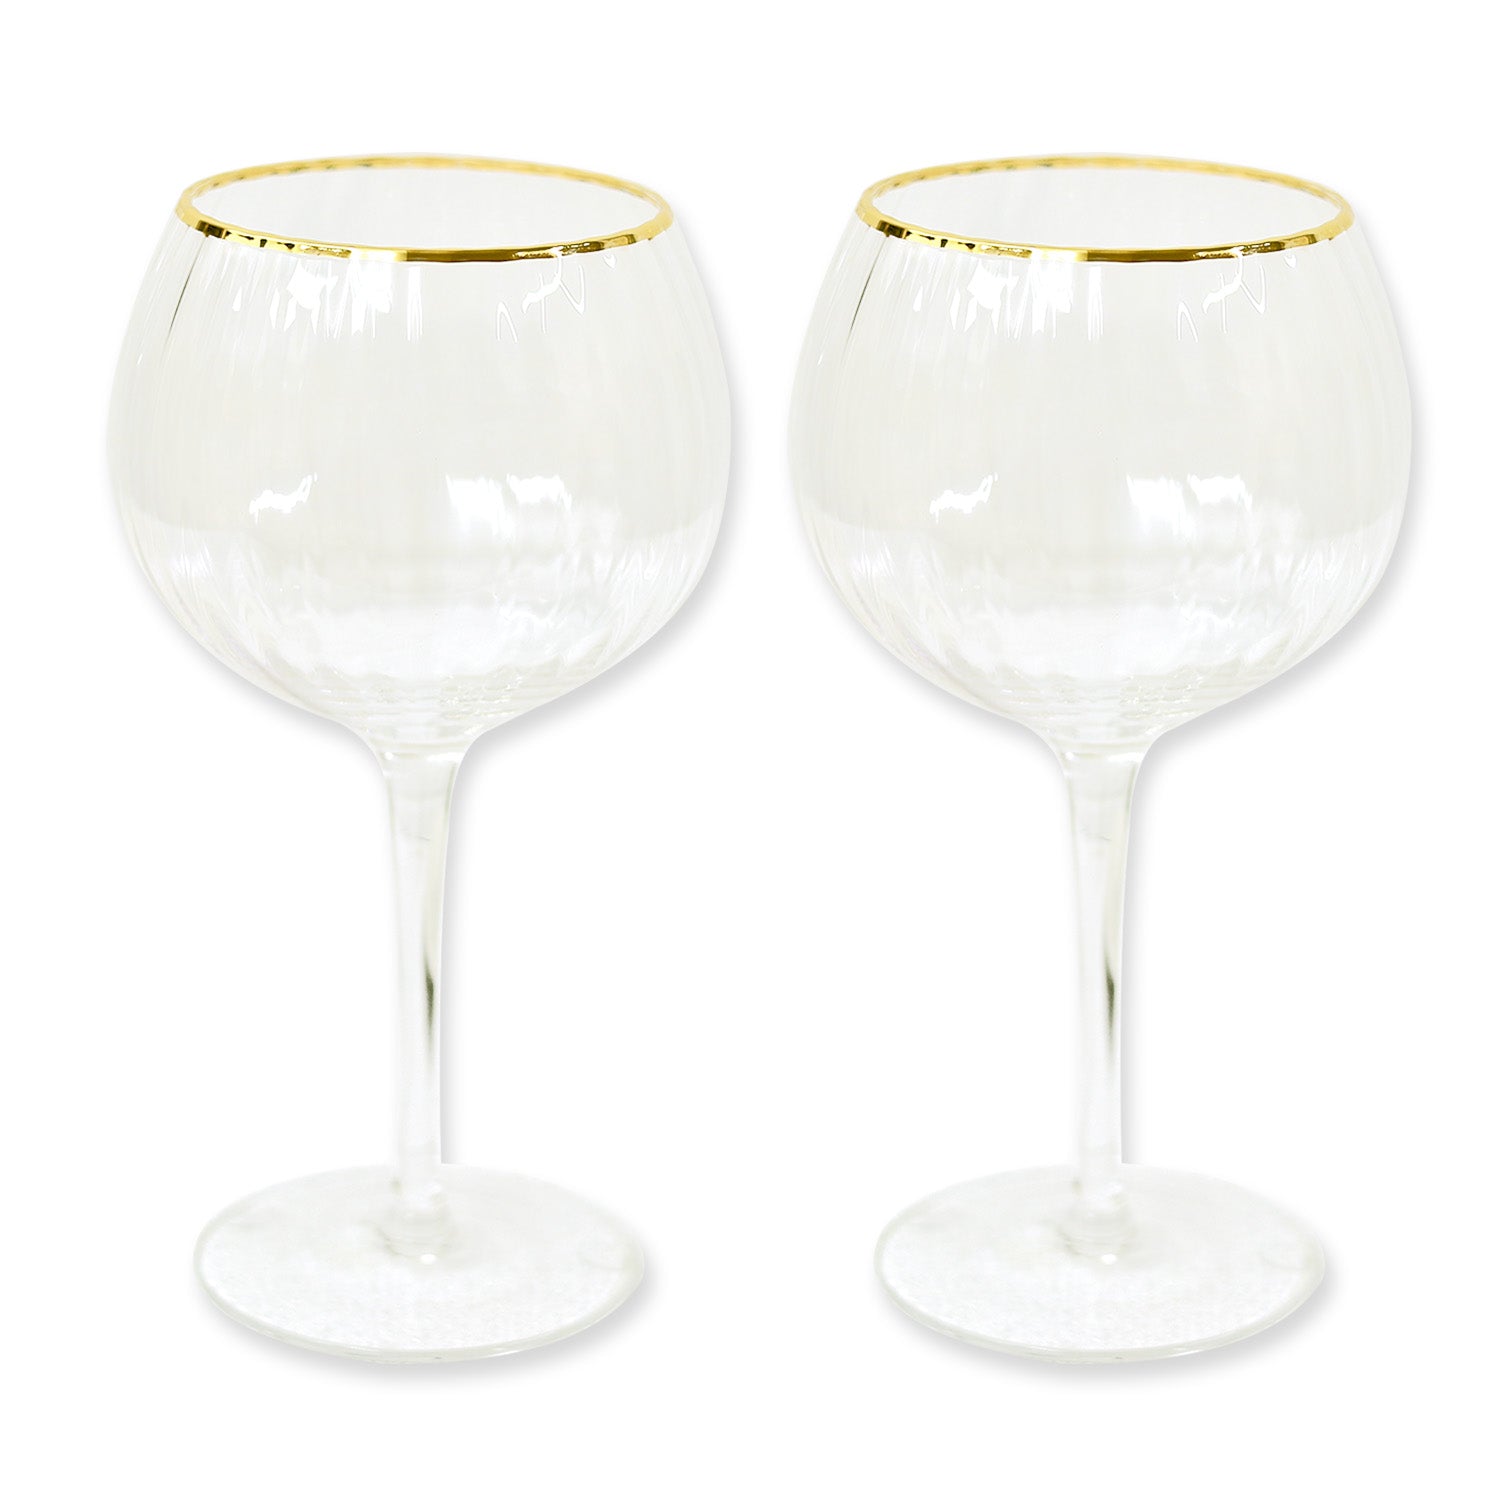 2pc 600ml Clear Gold Rim Gin Glasses